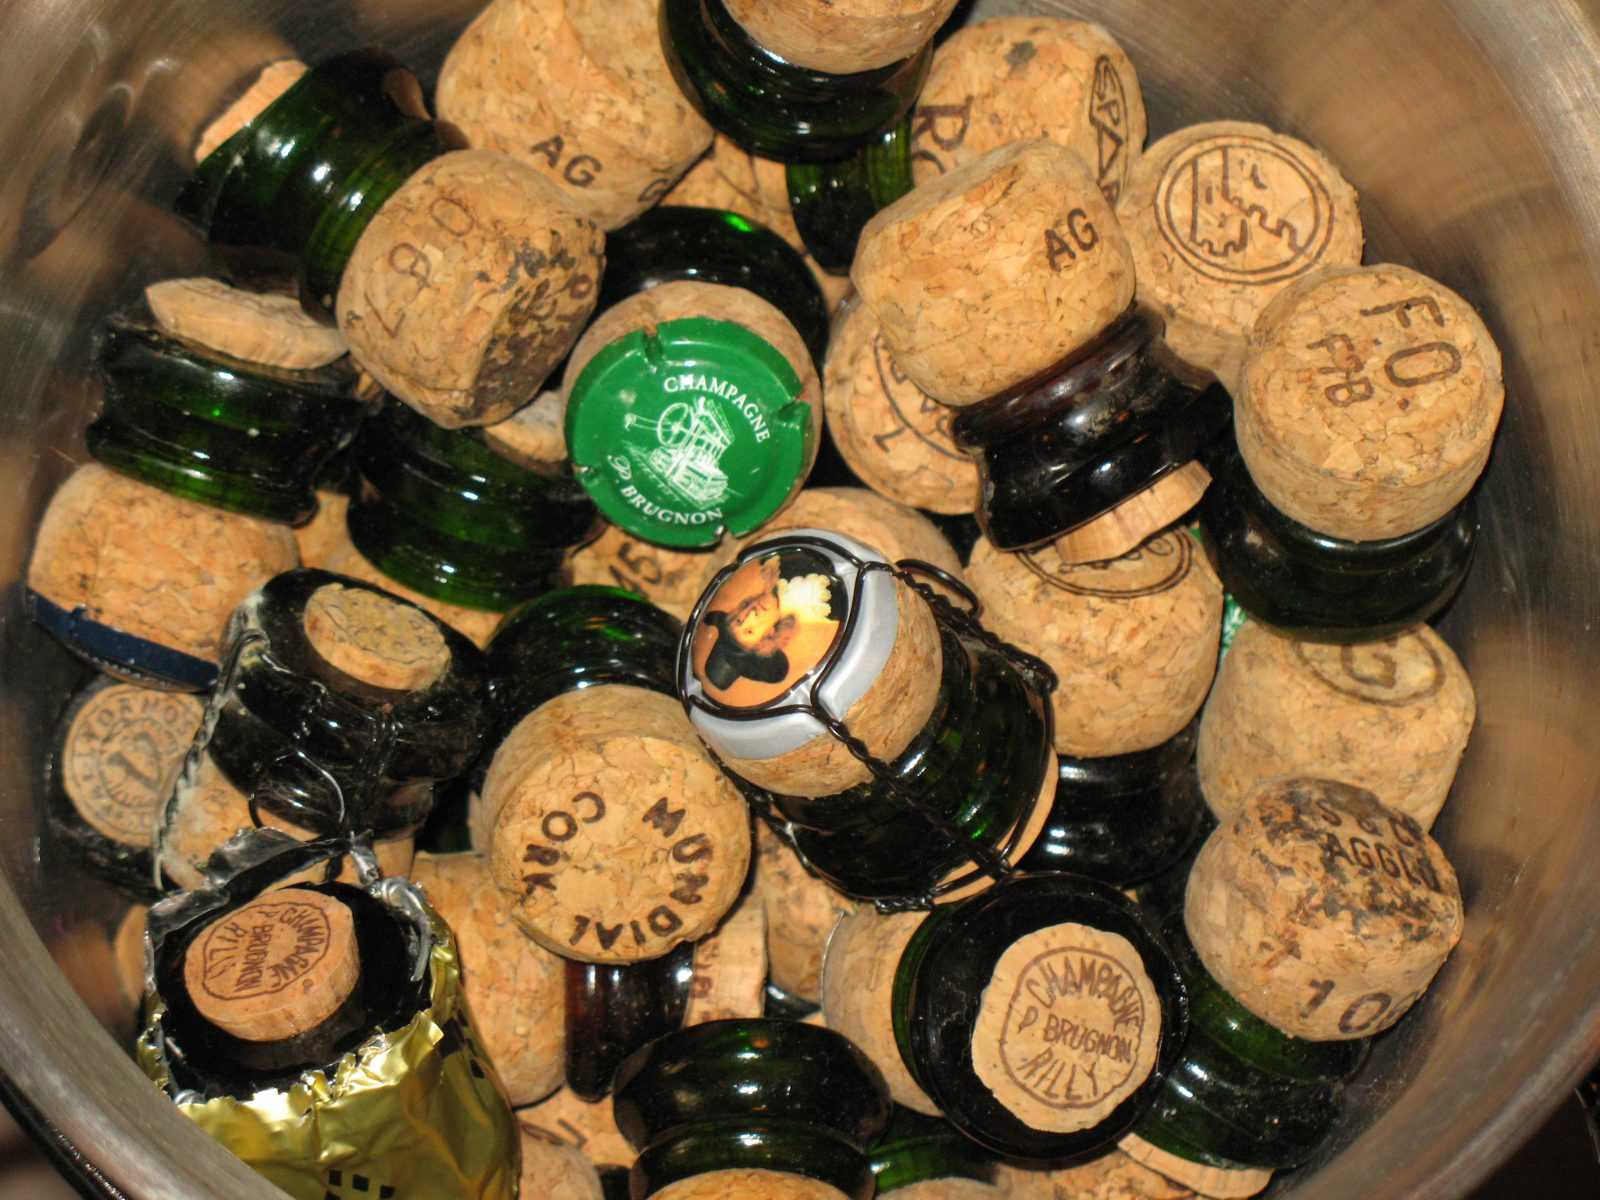 La suma importancia del corcho en la conservación de los vinos